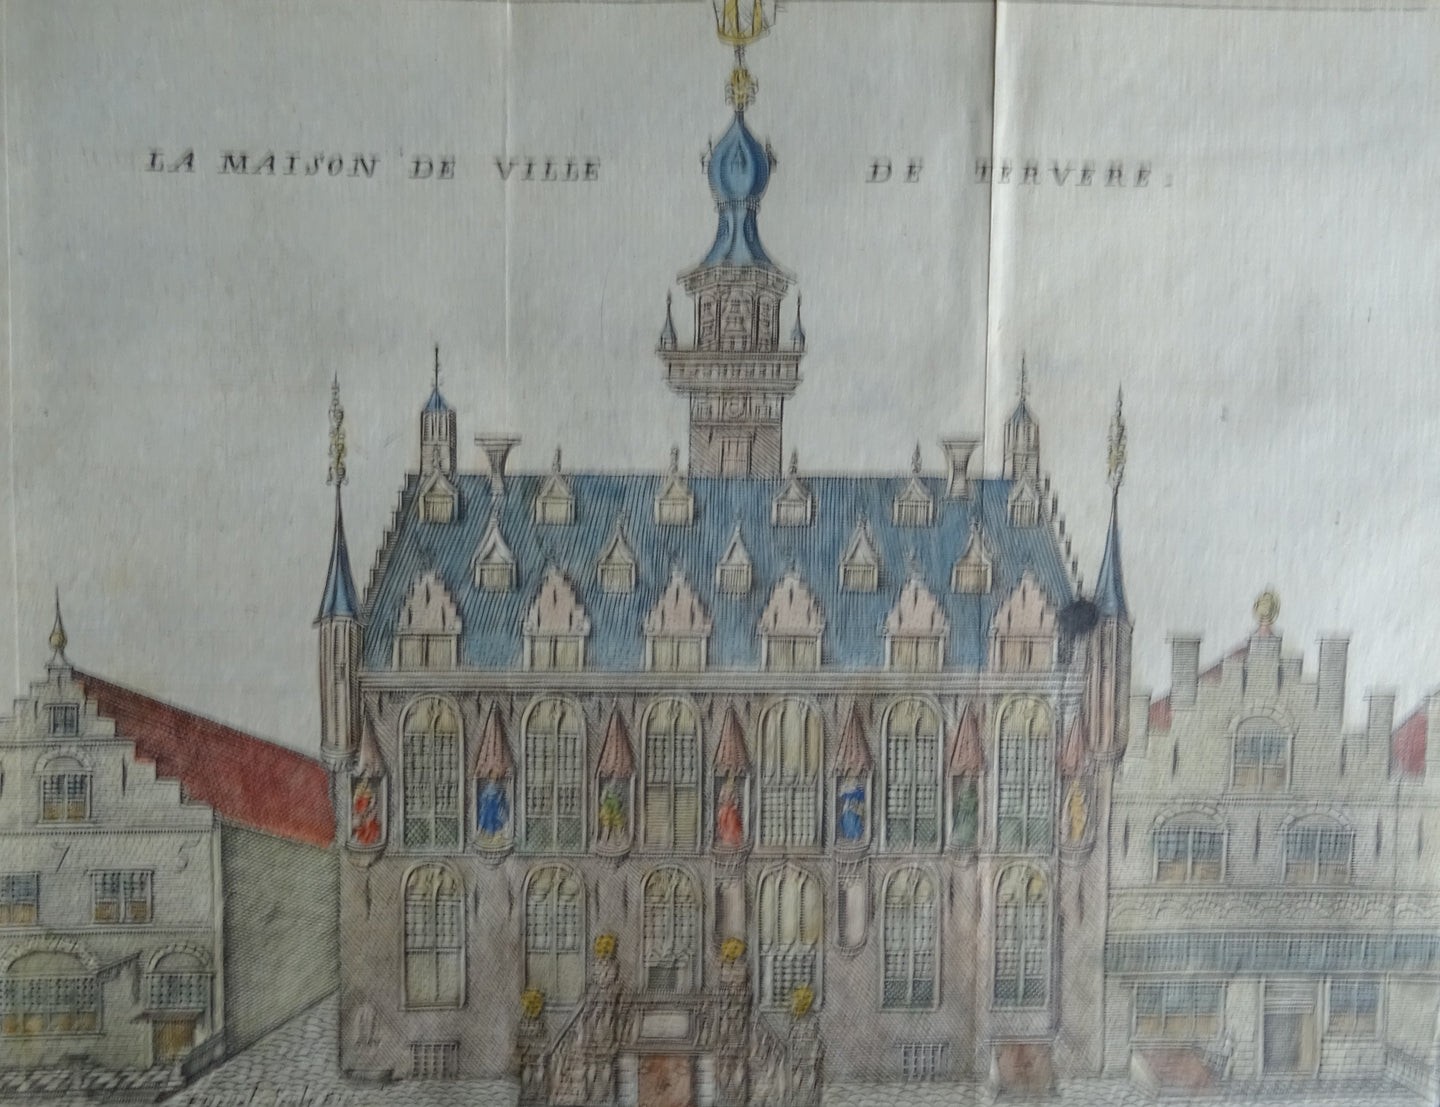 La Maison de Ville de Tervere ( Stadhuis van Veere ) - Harrewijn - ca  1743